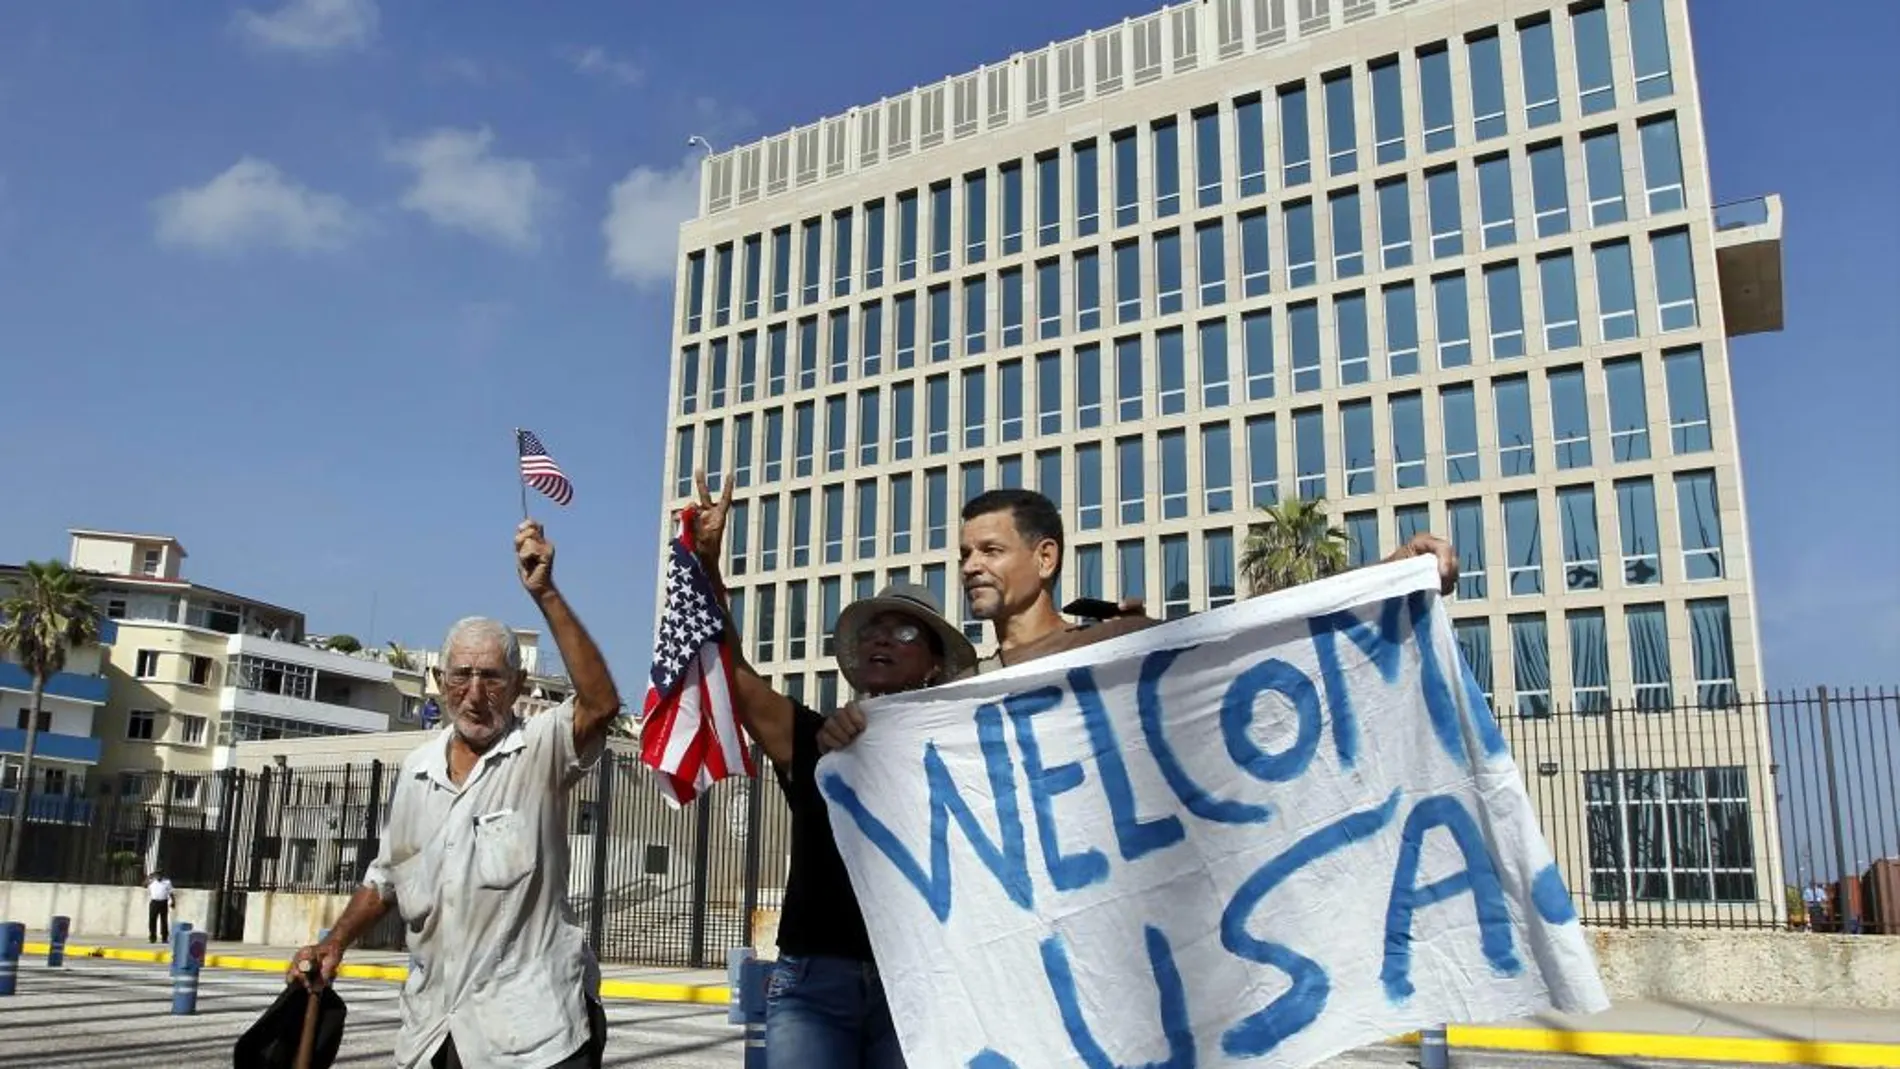 Un grupo de personas sostiene una pancarta y agita banderas frente a la embajada de Estados Unidos en La Habana (Cuba). Lunes 20 de julio del 2015.